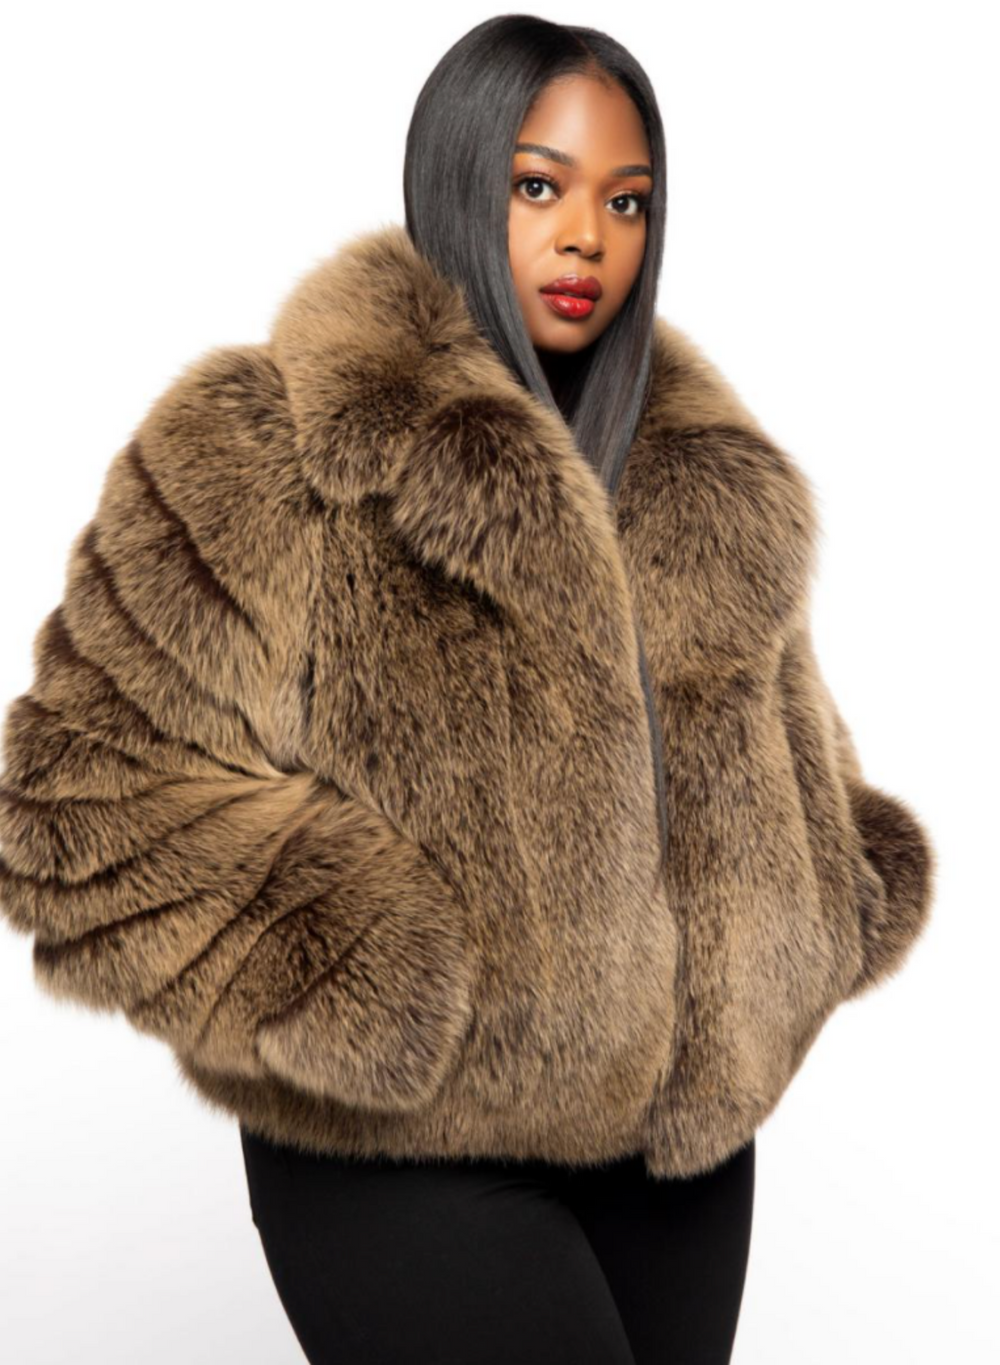 Size M: Kayden Fur $1250